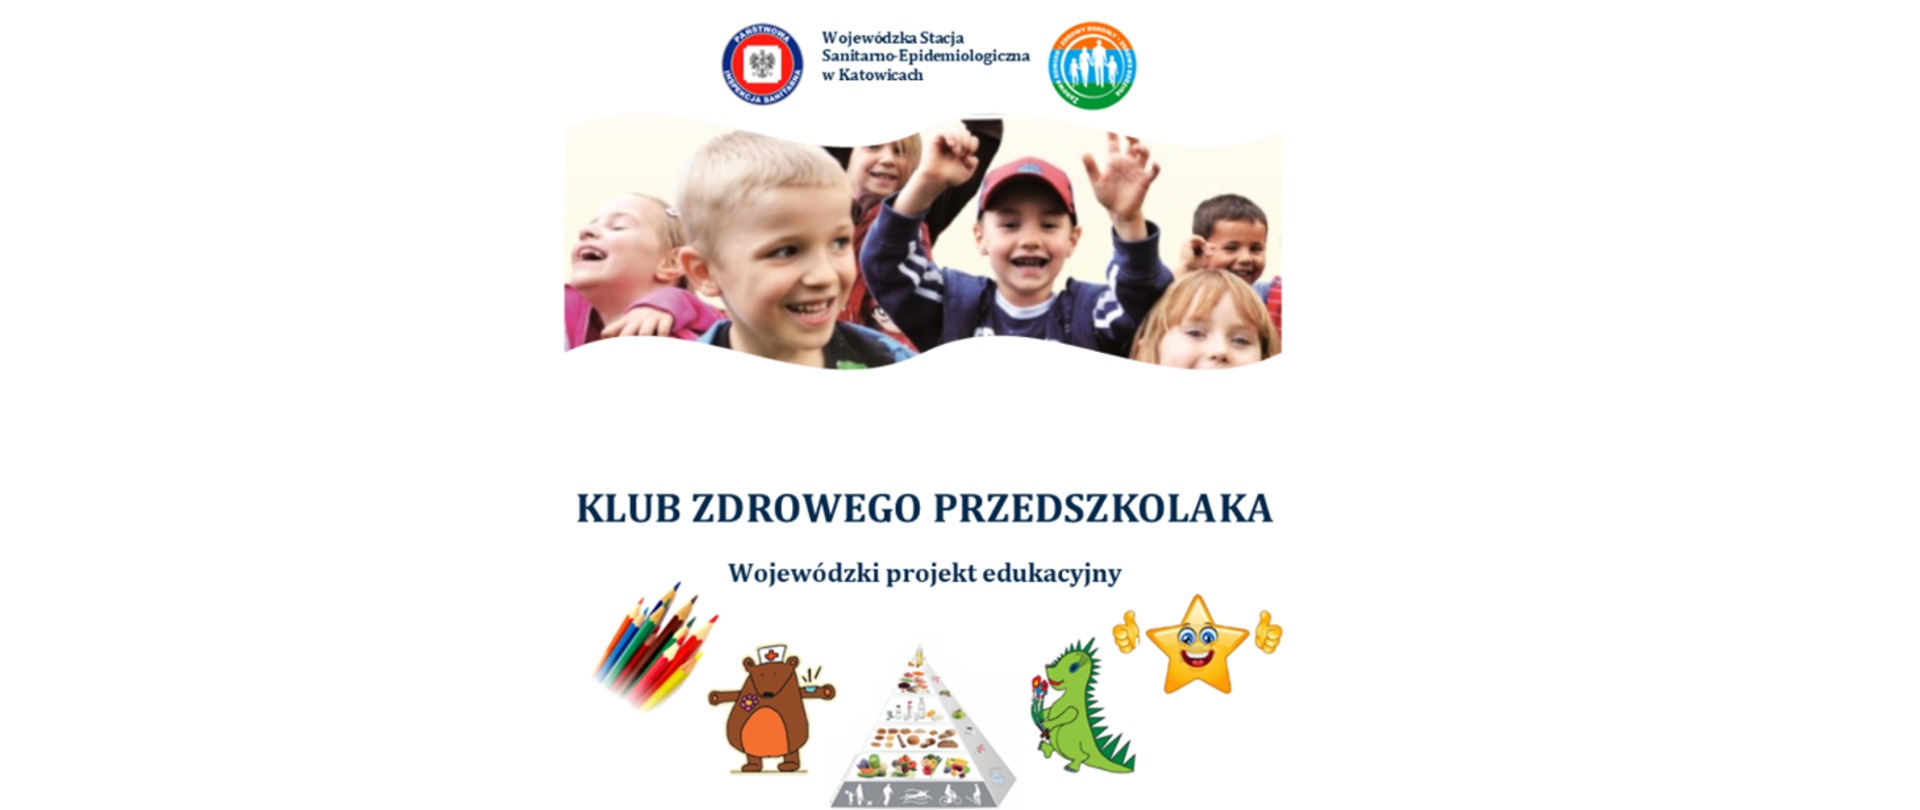 Klub zdrowego przedszkolaka - wojewódzki projekt edukacyjny